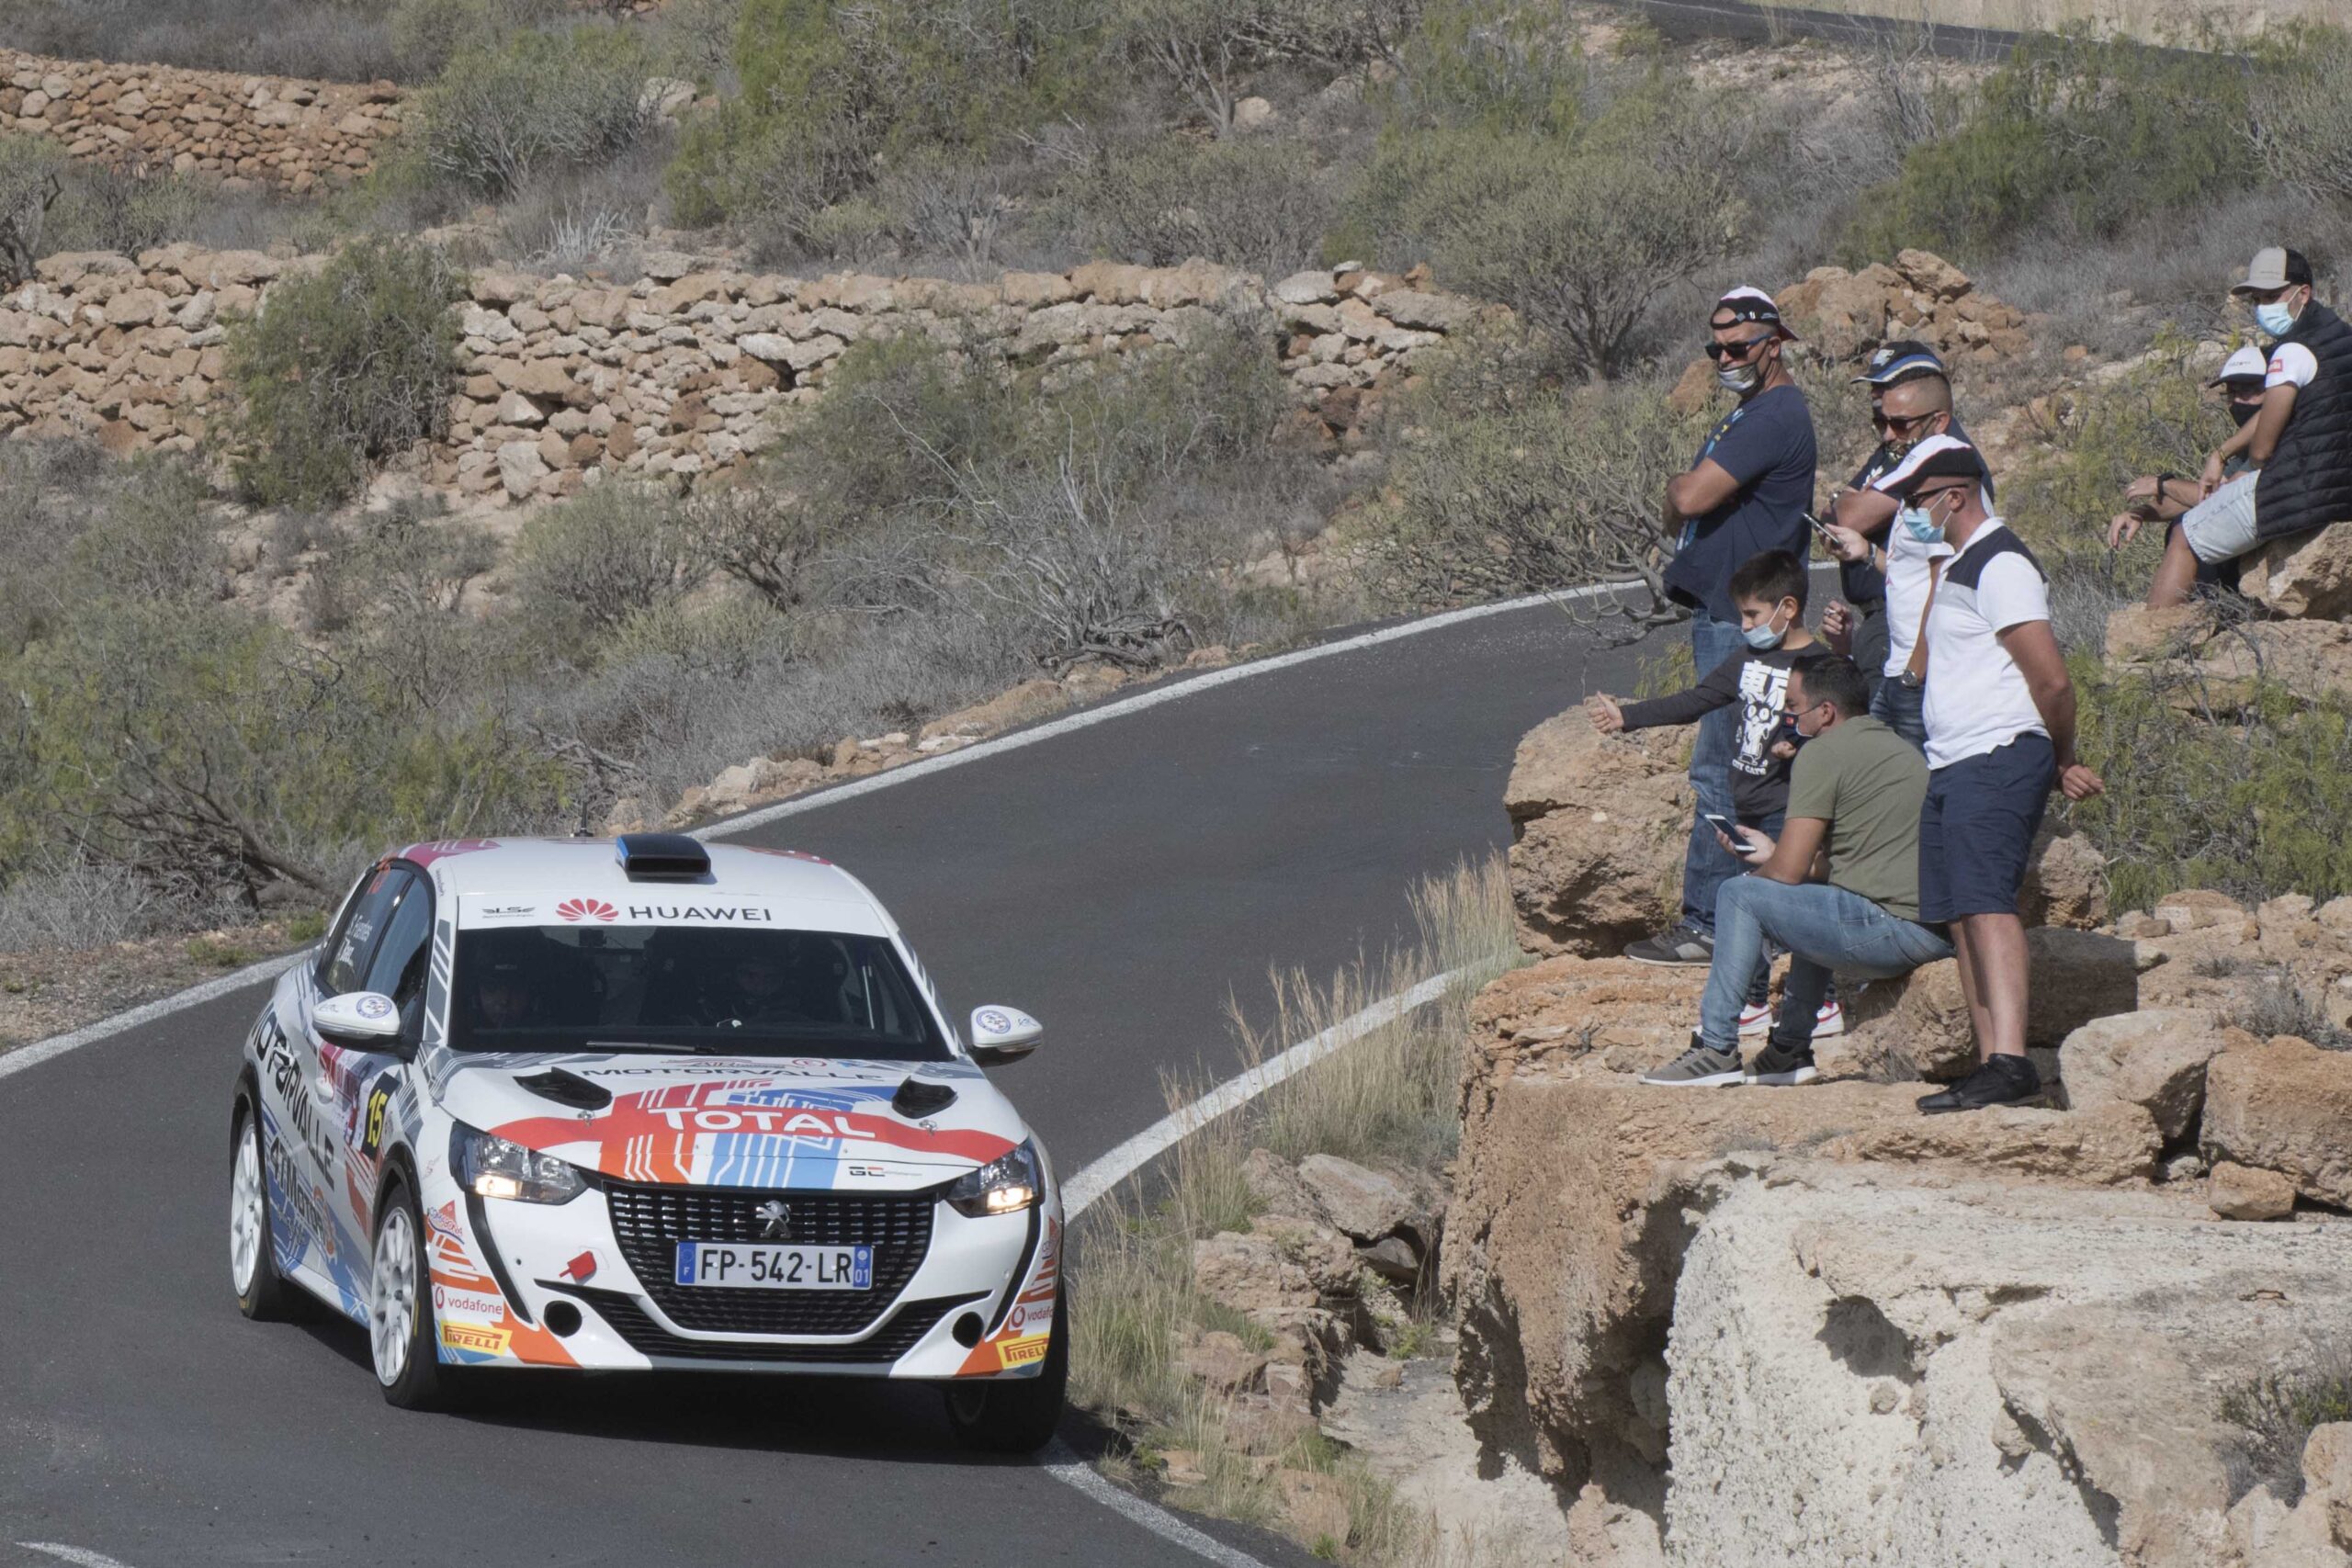 El 49 Rally Orvecame Isla Tenerife Se Celebrará El 17 Y 18 De Noviembre